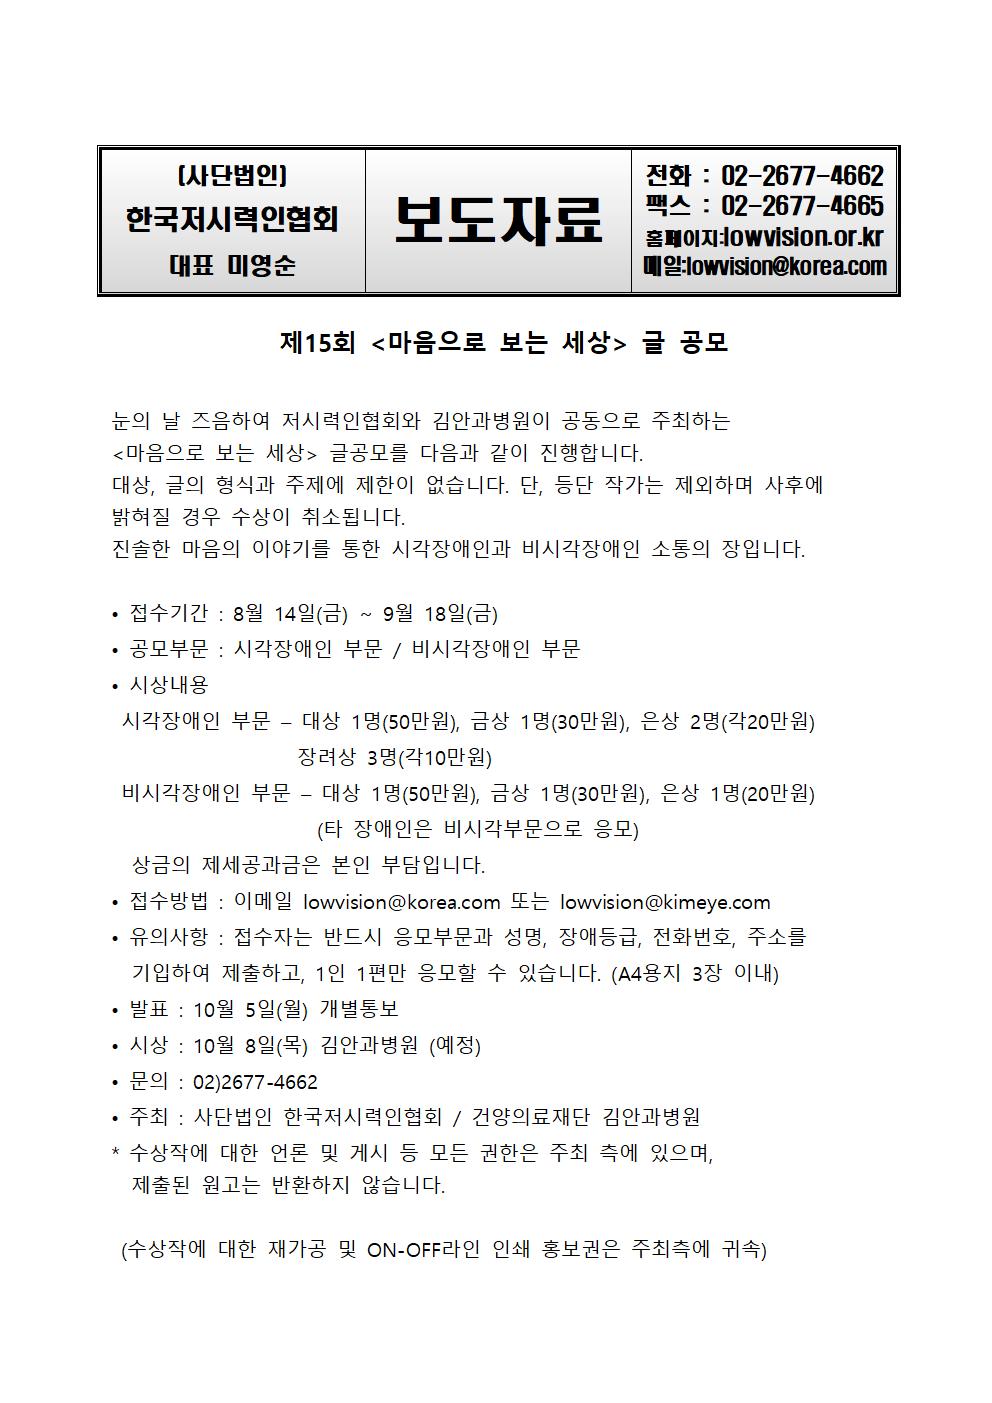 한국저시력인협회-보도자료_제15회-마음으로보는_세상_글공모001.jpg